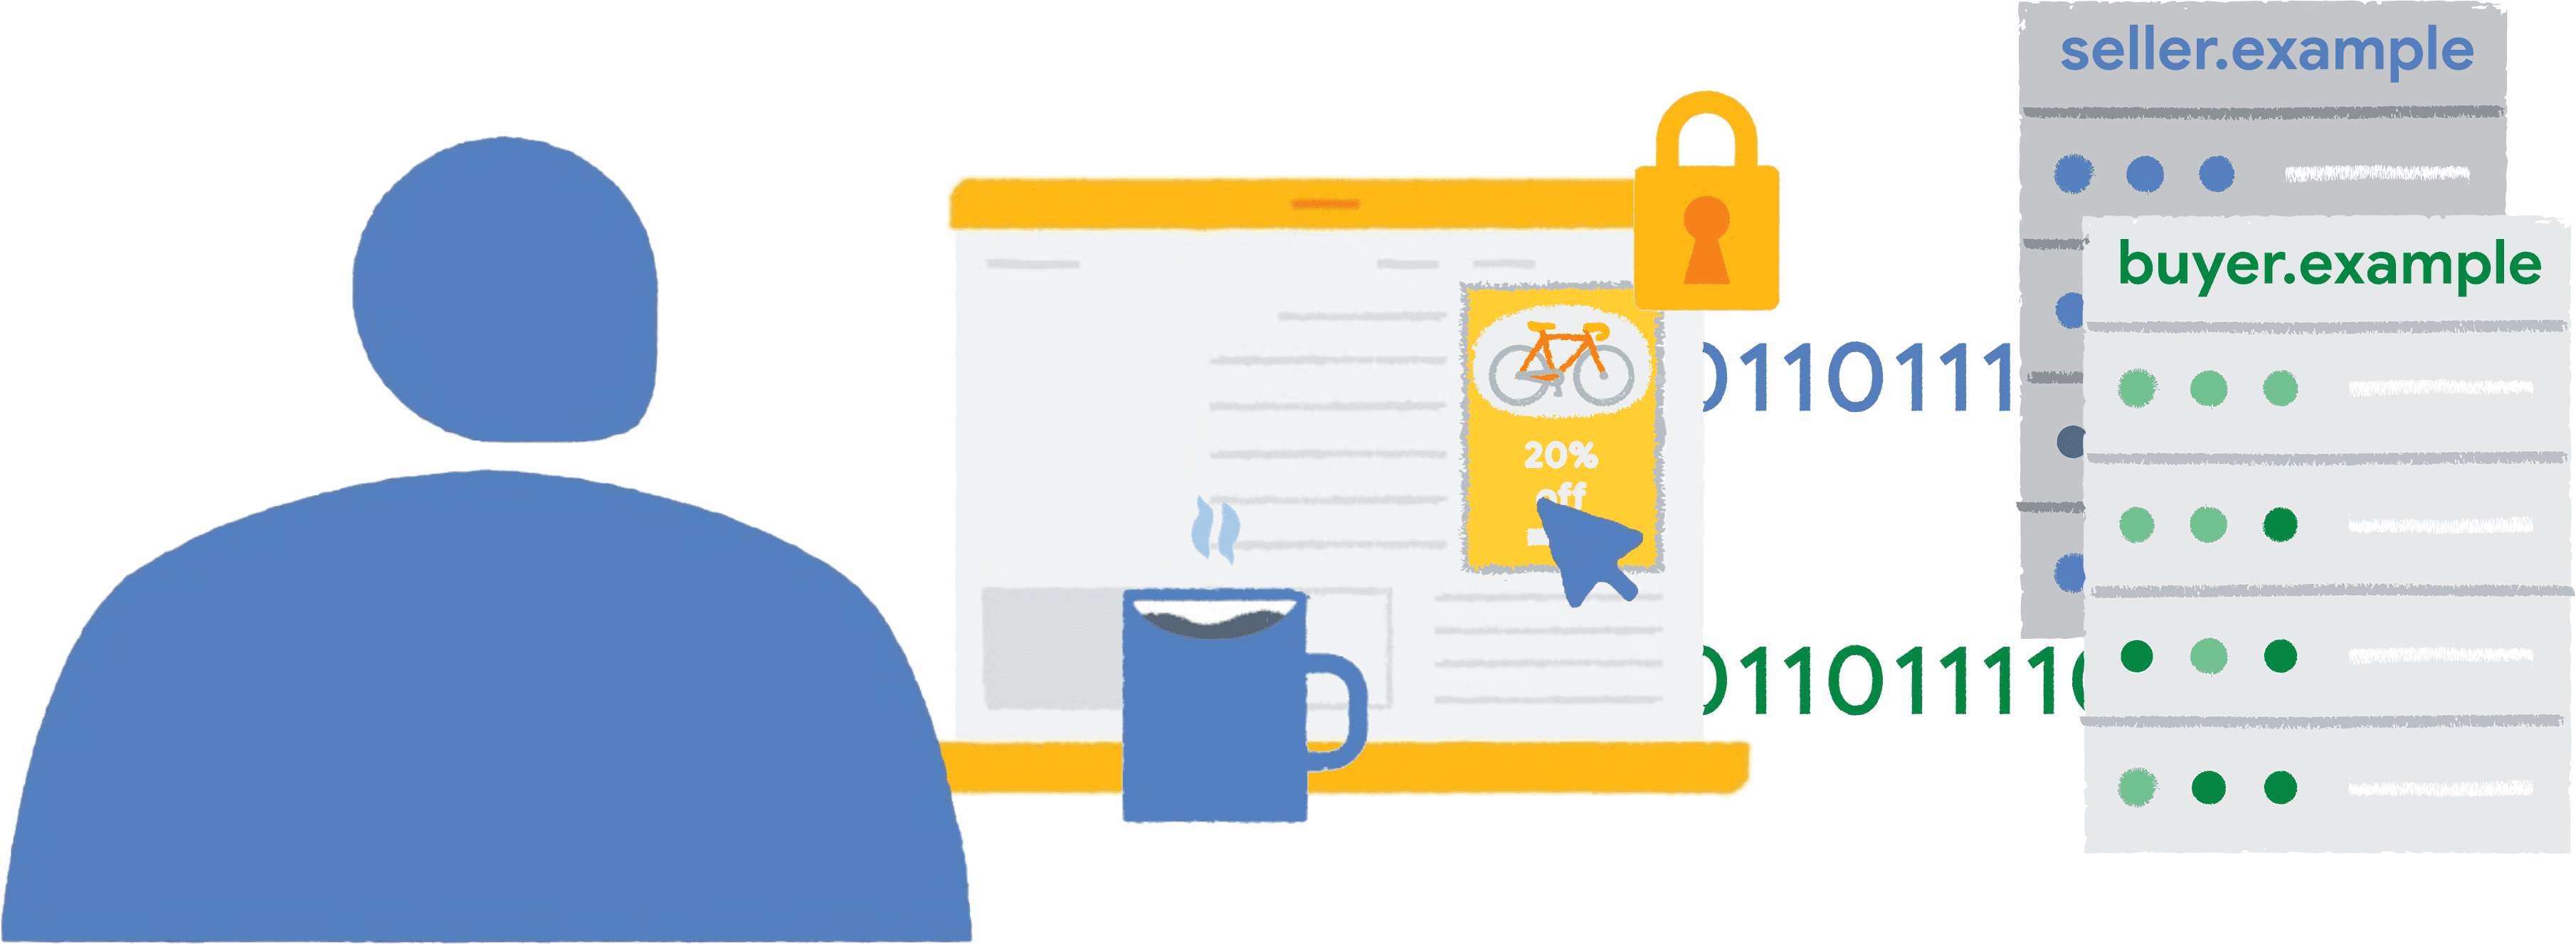 Một người nhấp vào quảng cáo về một loại xe đạp có gắn khung bảo vệ trên một trang web tin tức. Dữ liệu báo cáo được gửi đến người bán và người mua.